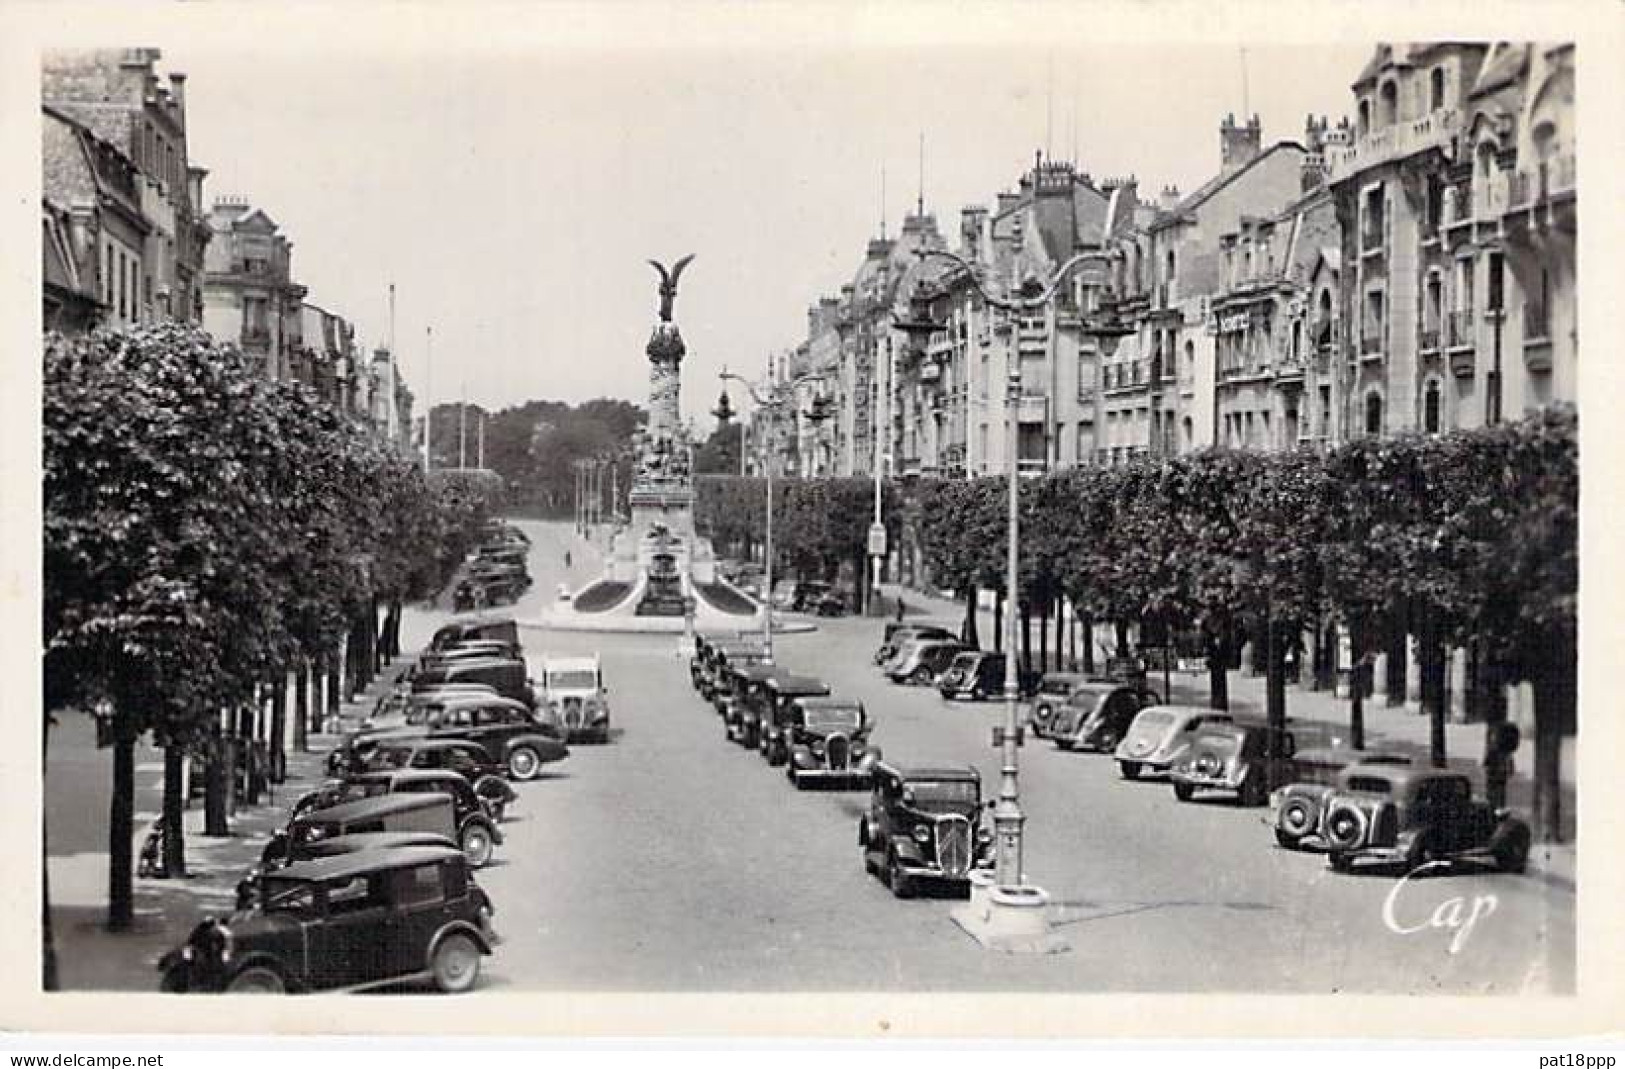 FRANCE - Lot De 20 CPSM Photos Noir Et Blanc Format CPA Années 1945-1960's En BON ETAT (Cf Détails Dans Description) - 5 - 99 Karten